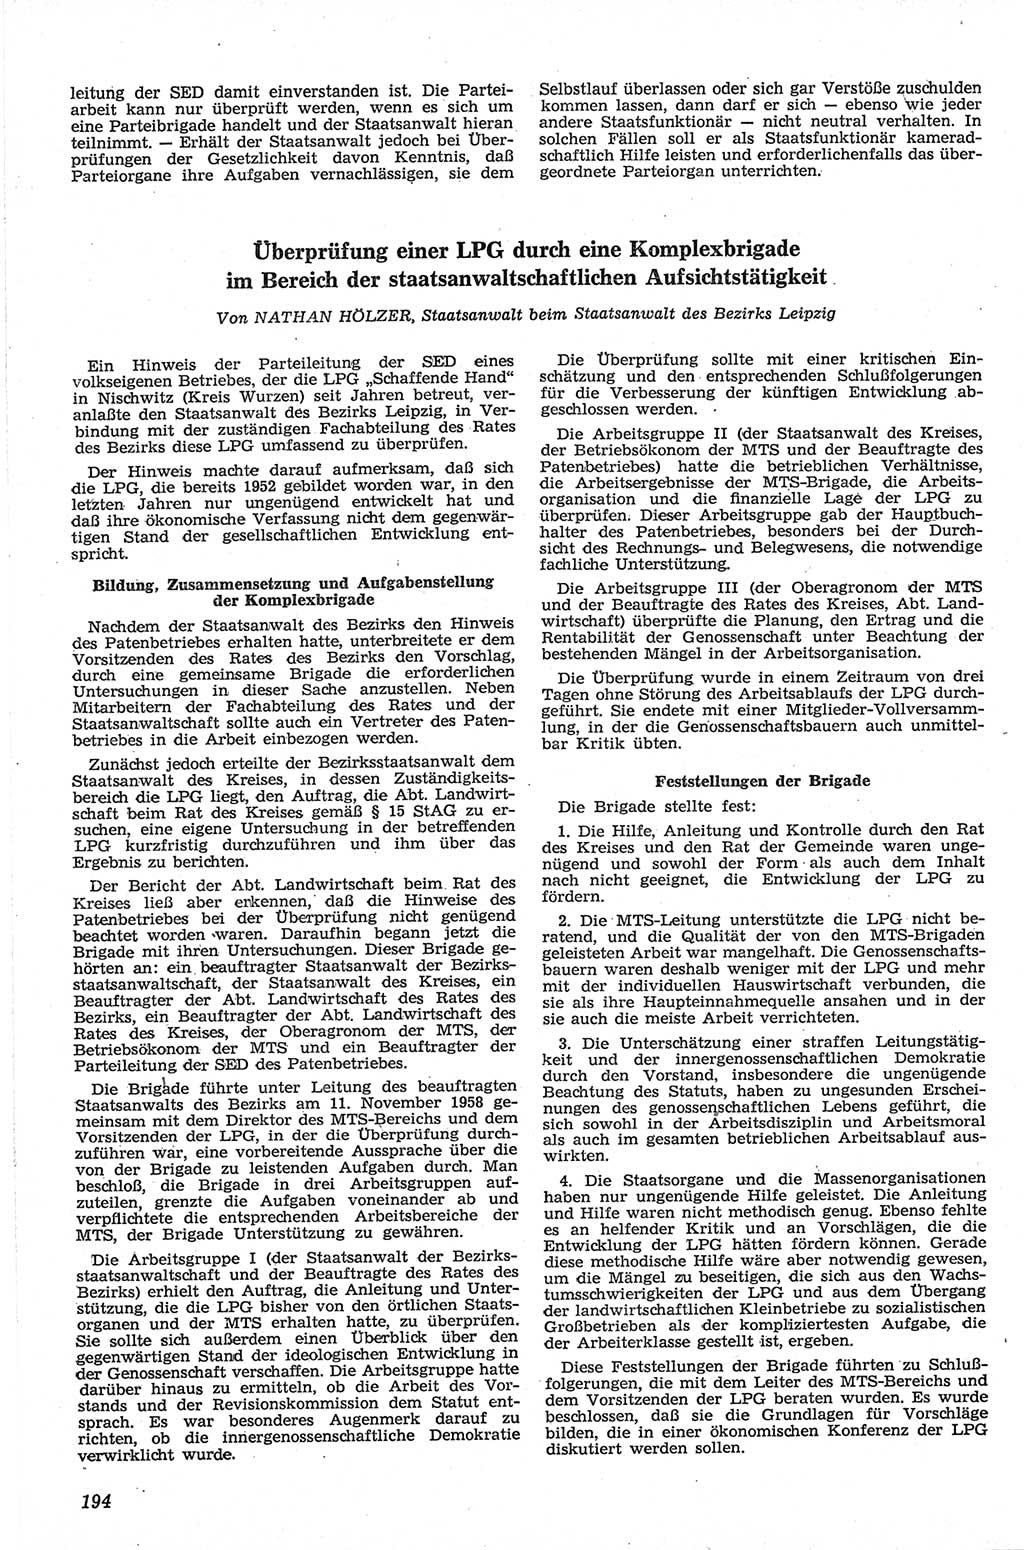 Neue Justiz (NJ), Zeitschrift für Recht und Rechtswissenschaft [Deutsche Demokratische Republik (DDR)], 13. Jahrgang 1959, Seite 194 (NJ DDR 1959, S. 194)